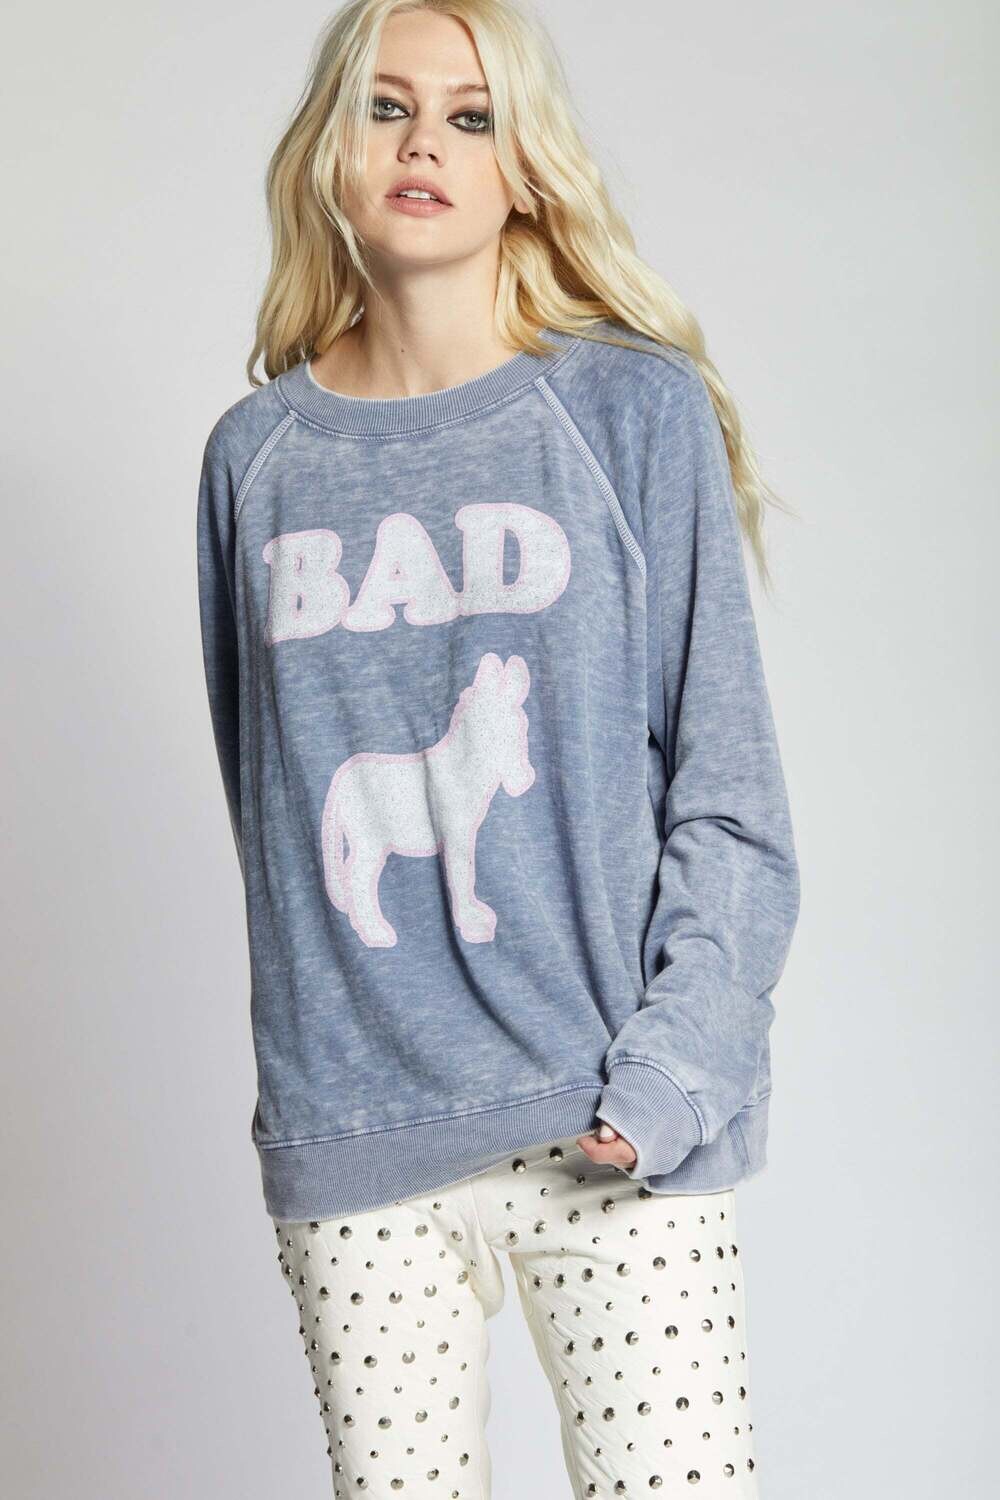 Bad A$$ Sweatshirt